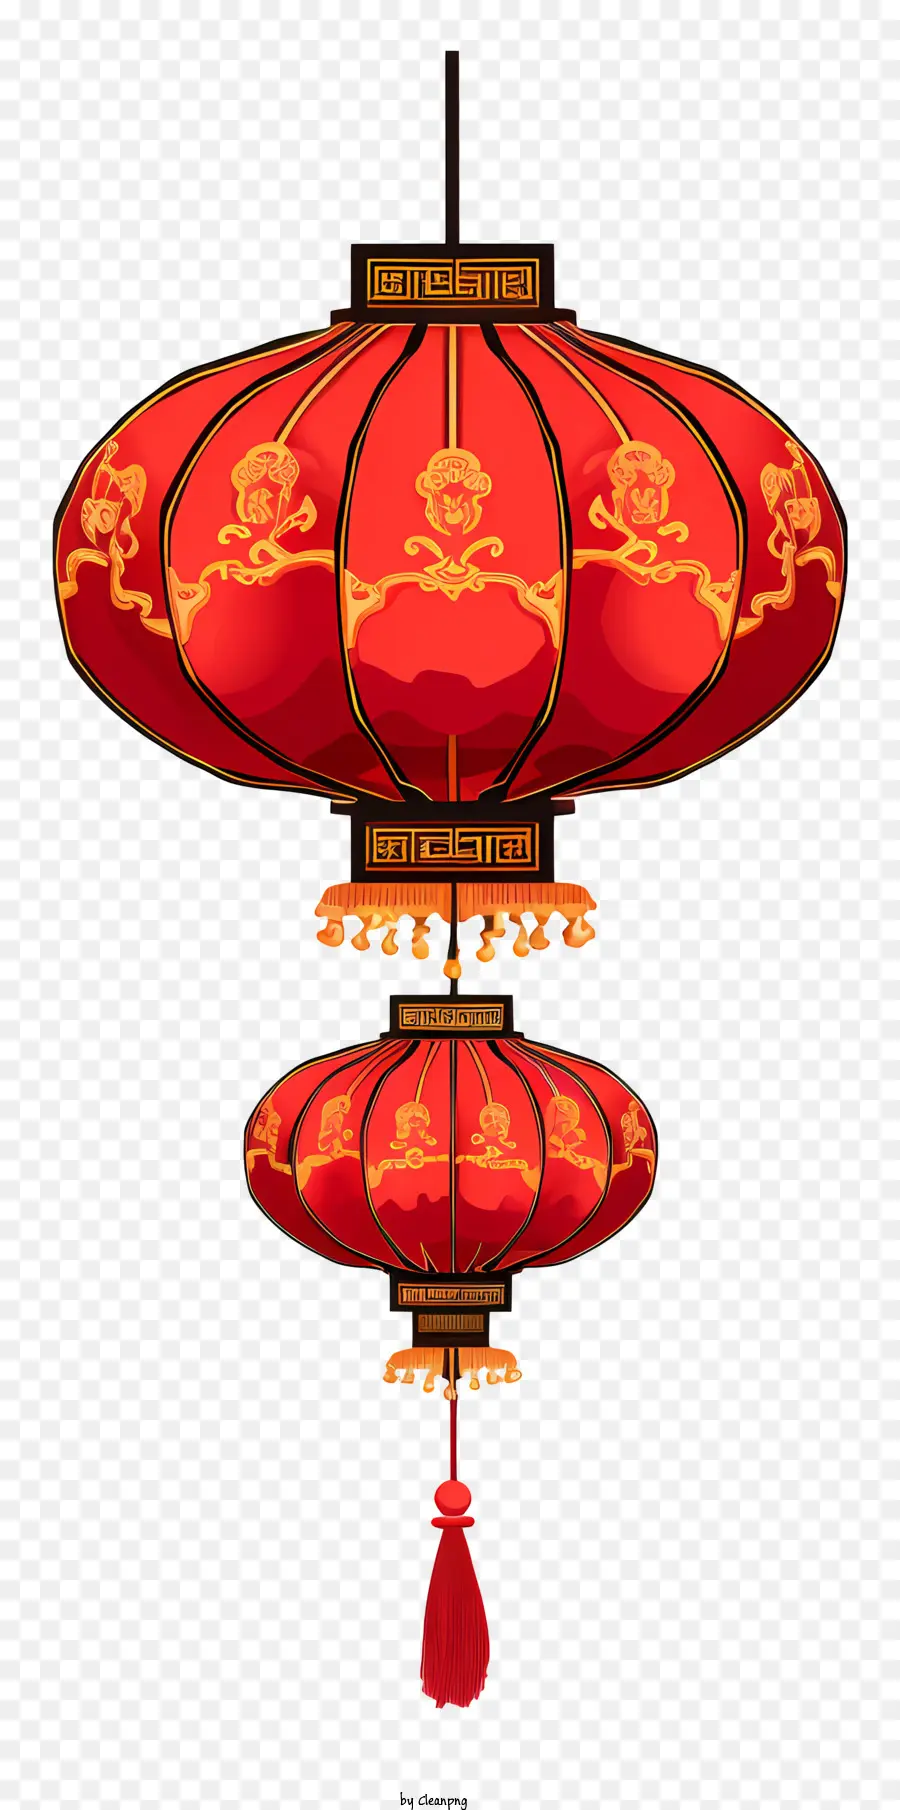 Lễ hội đèn lồng Đèn lồng Đèn lồng Đèn lồng Trung Quốc truyền thống Trung Quốc Lễ hội Trung Quốc Văn hóa Trung Quốc - Đèn lồng truyền thống của Trung Quốc với giấy đỏ và vàng